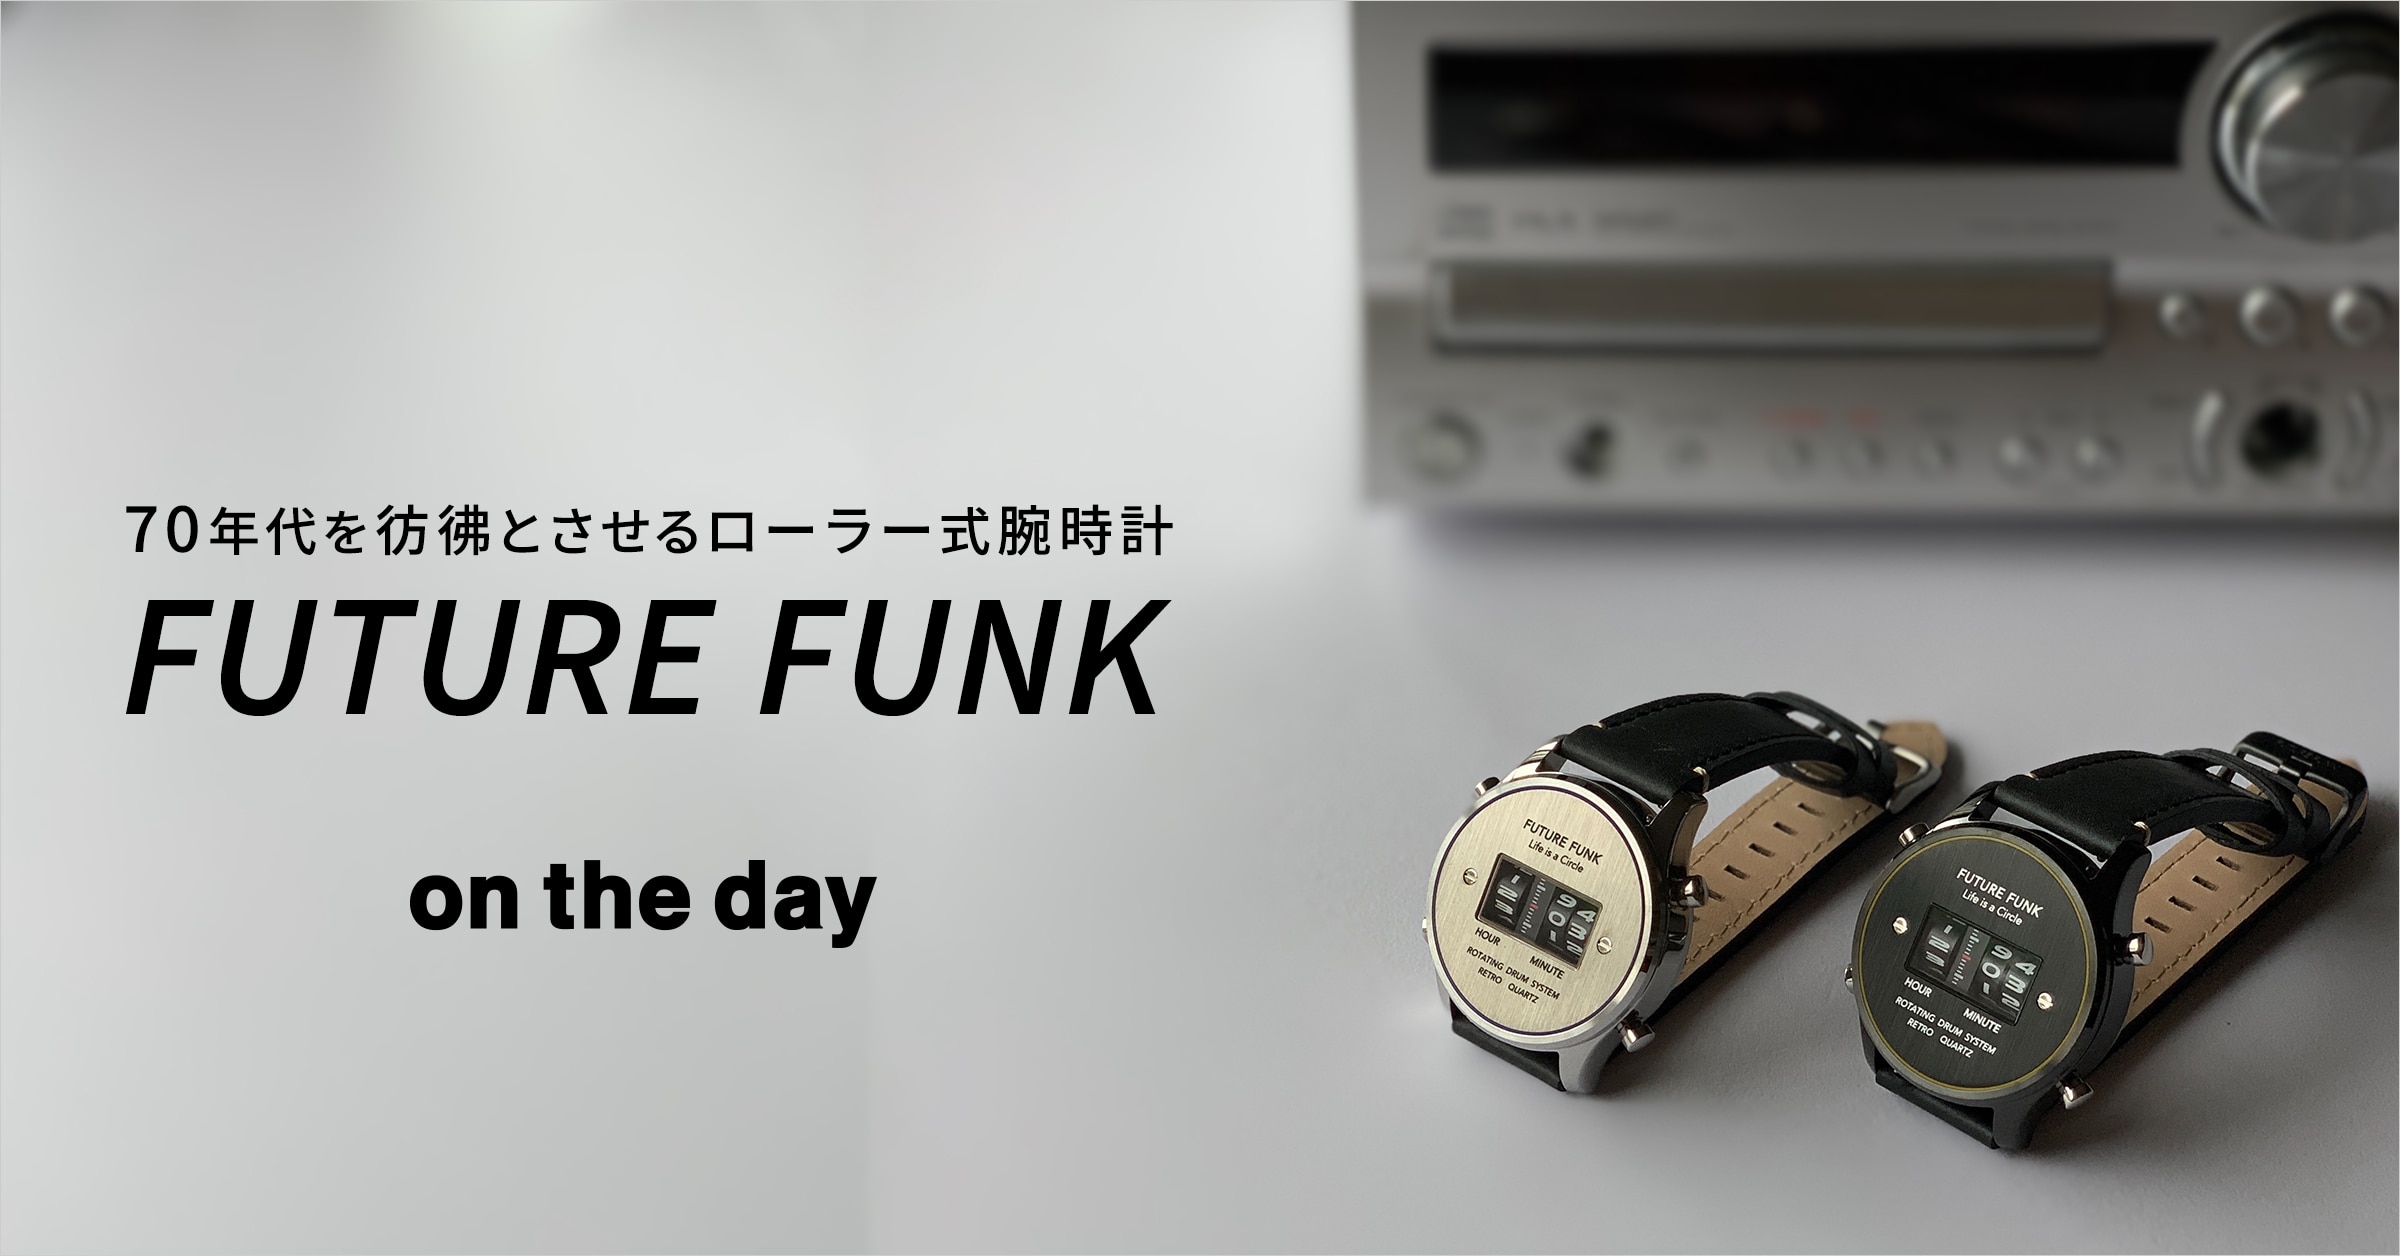 on the day(オンザデイ) 70年代を彷彿とさせるローラー式腕時計 FUTURE FUNK(フューチャー ファンク)